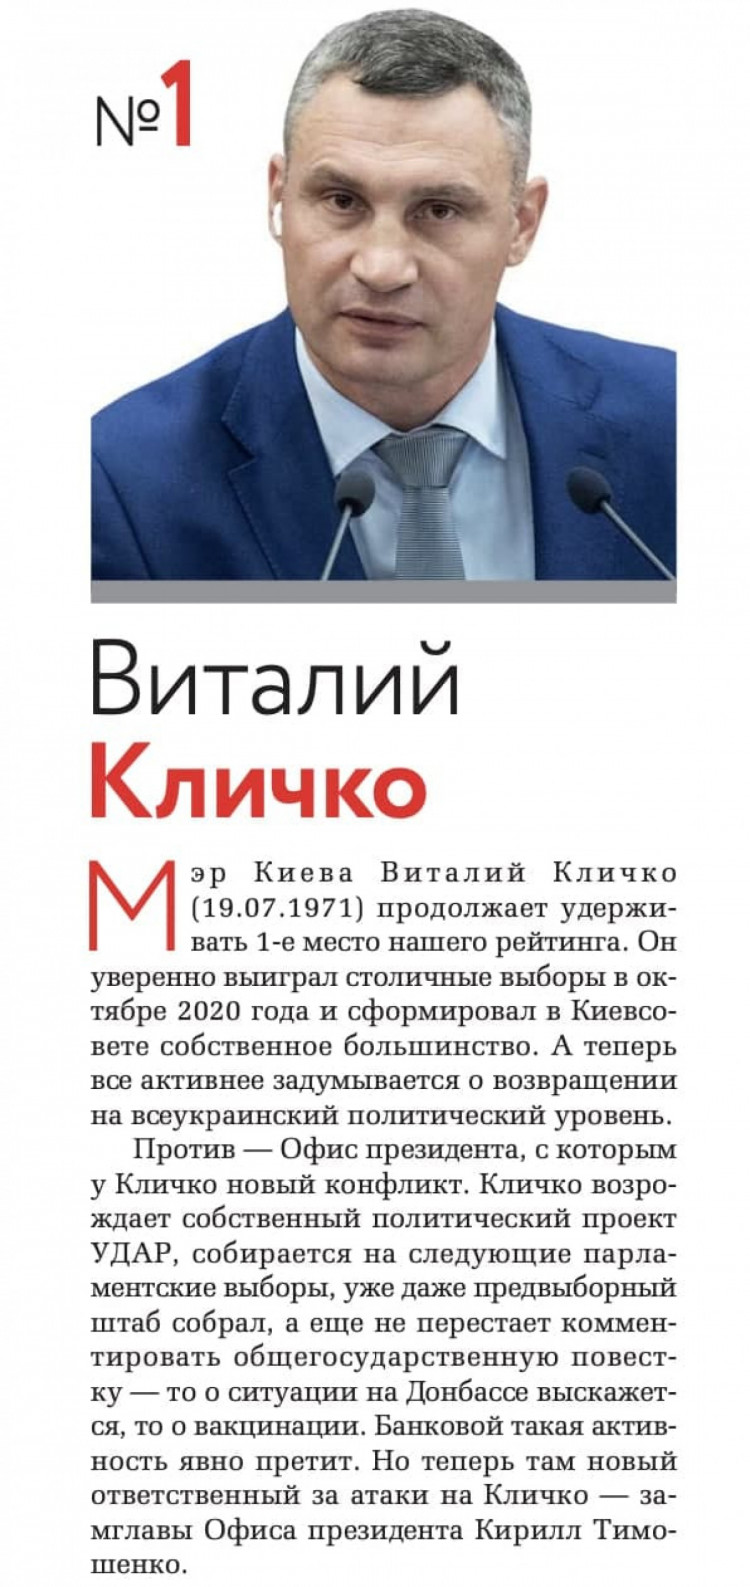 Первое место в рейтинге глав госадминистраций получил Кличко 